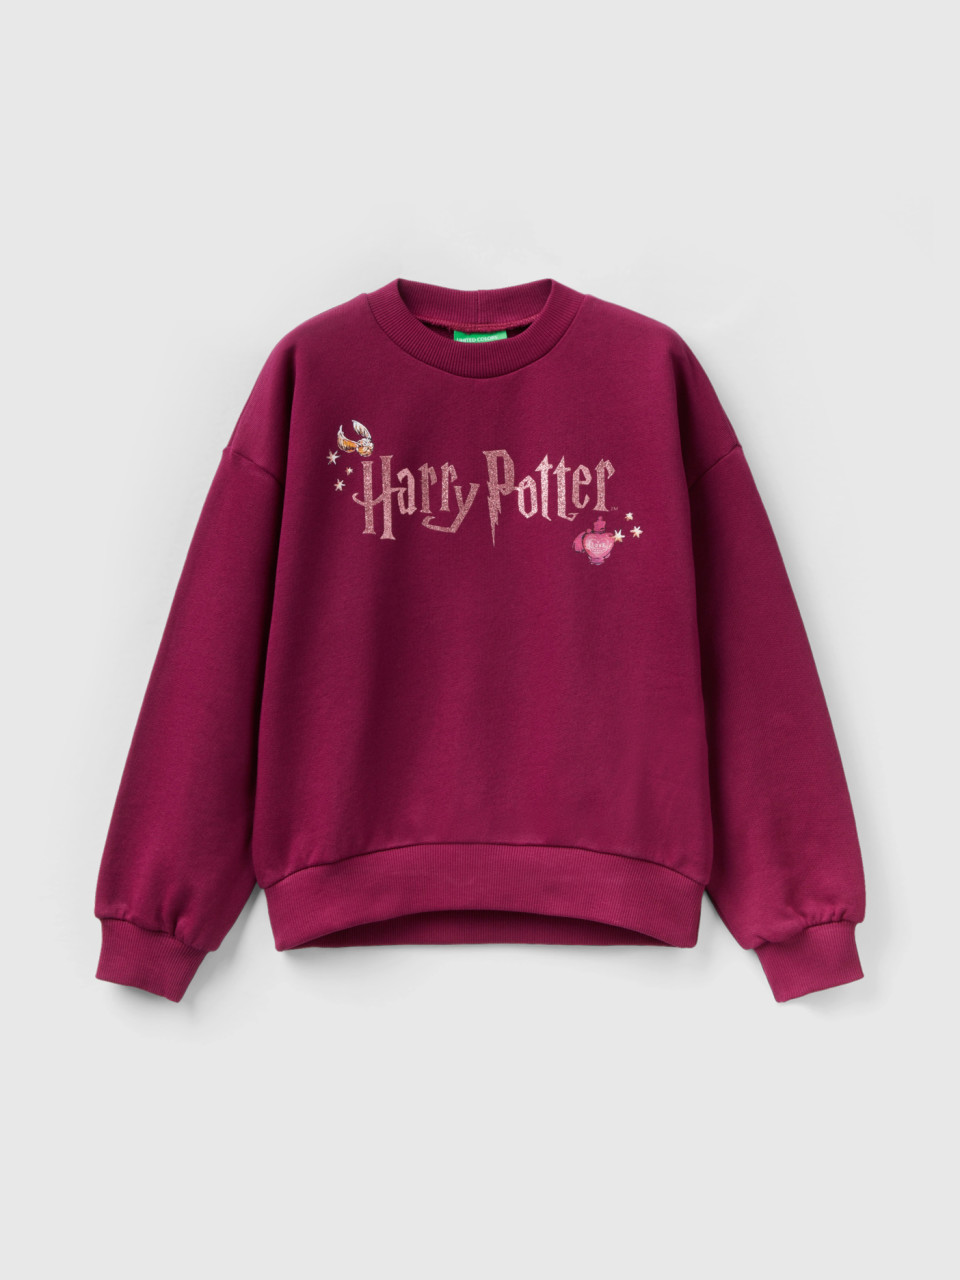 Benetton, Harry Potter - Sweater Mit Glitter, Pflaume, female